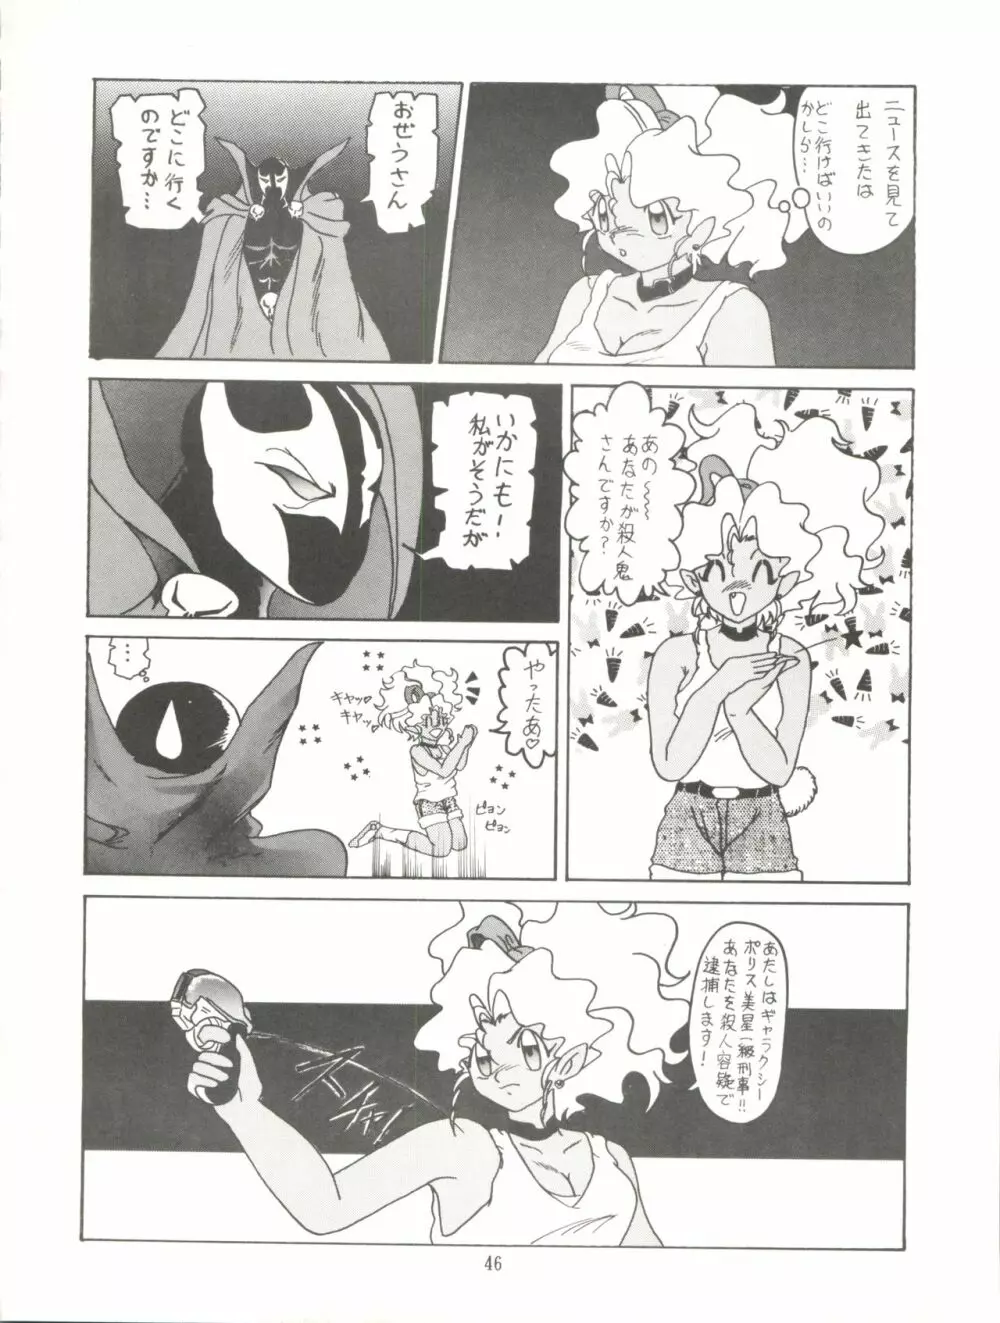 天地無用! みゃーん 3 Final Page.46